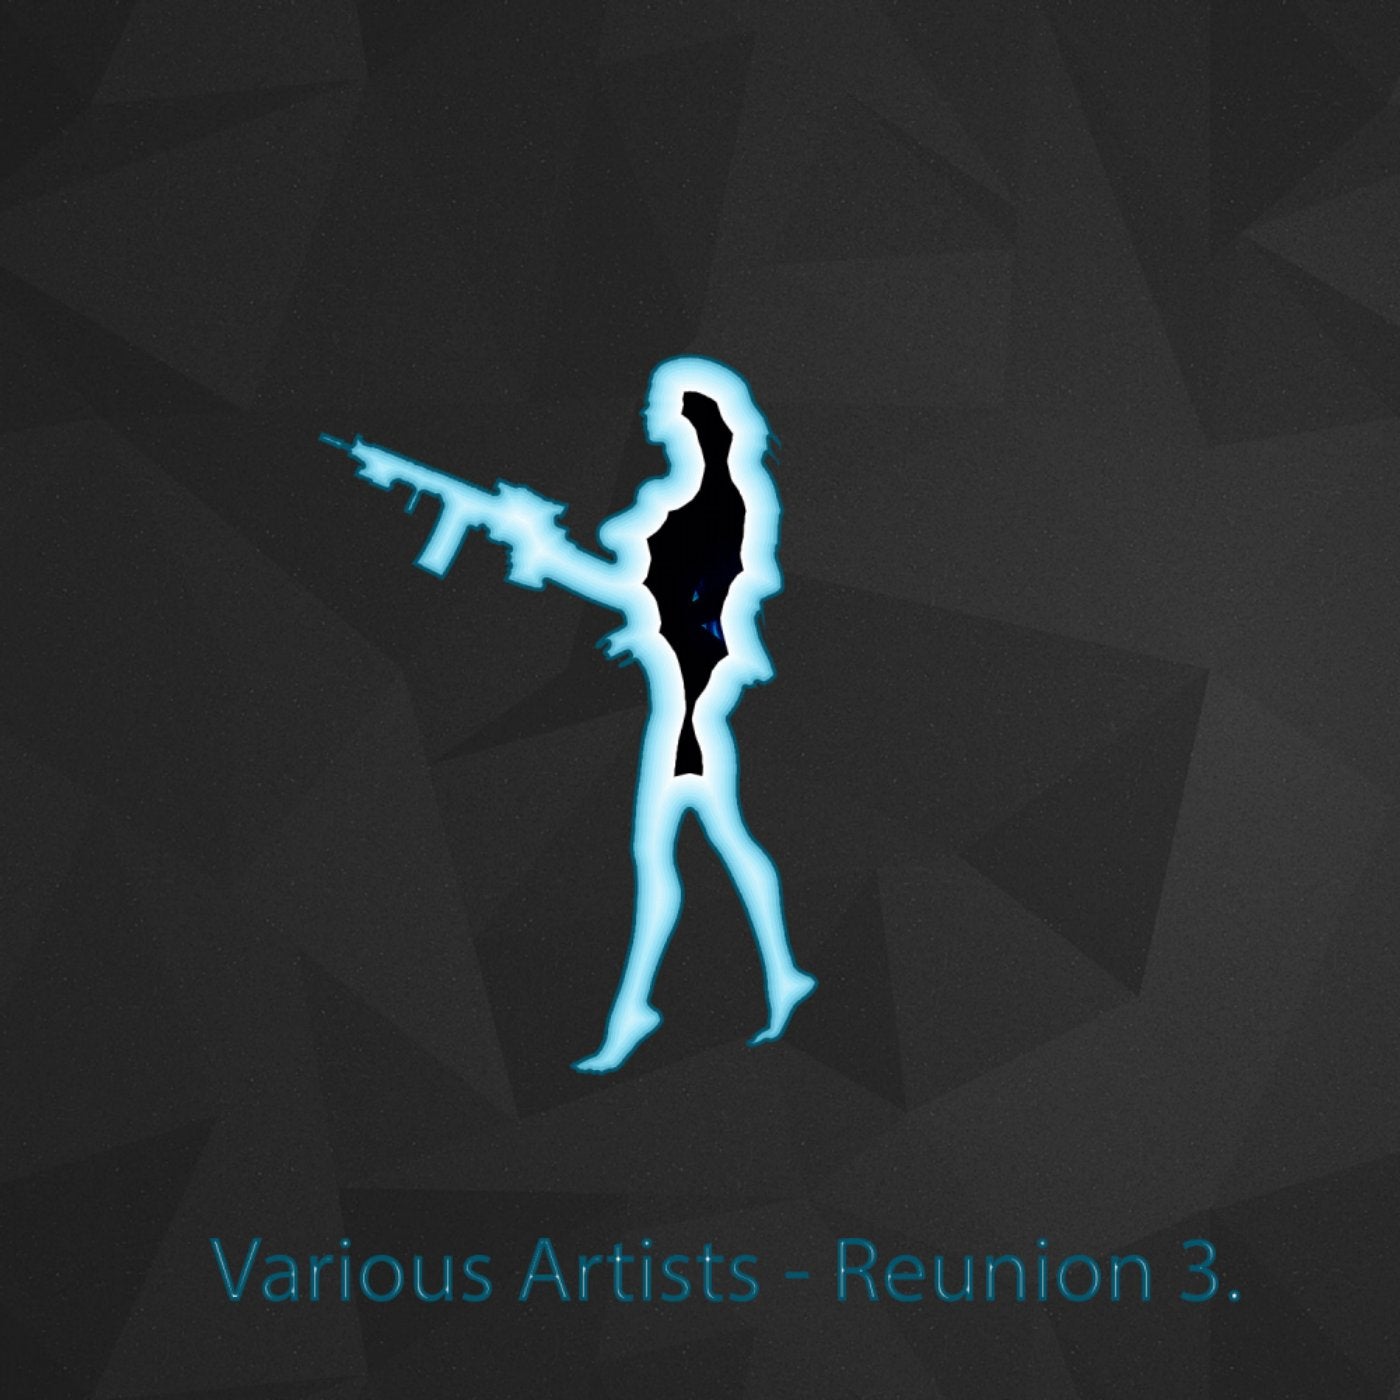 Various Artists - Reunion 3.